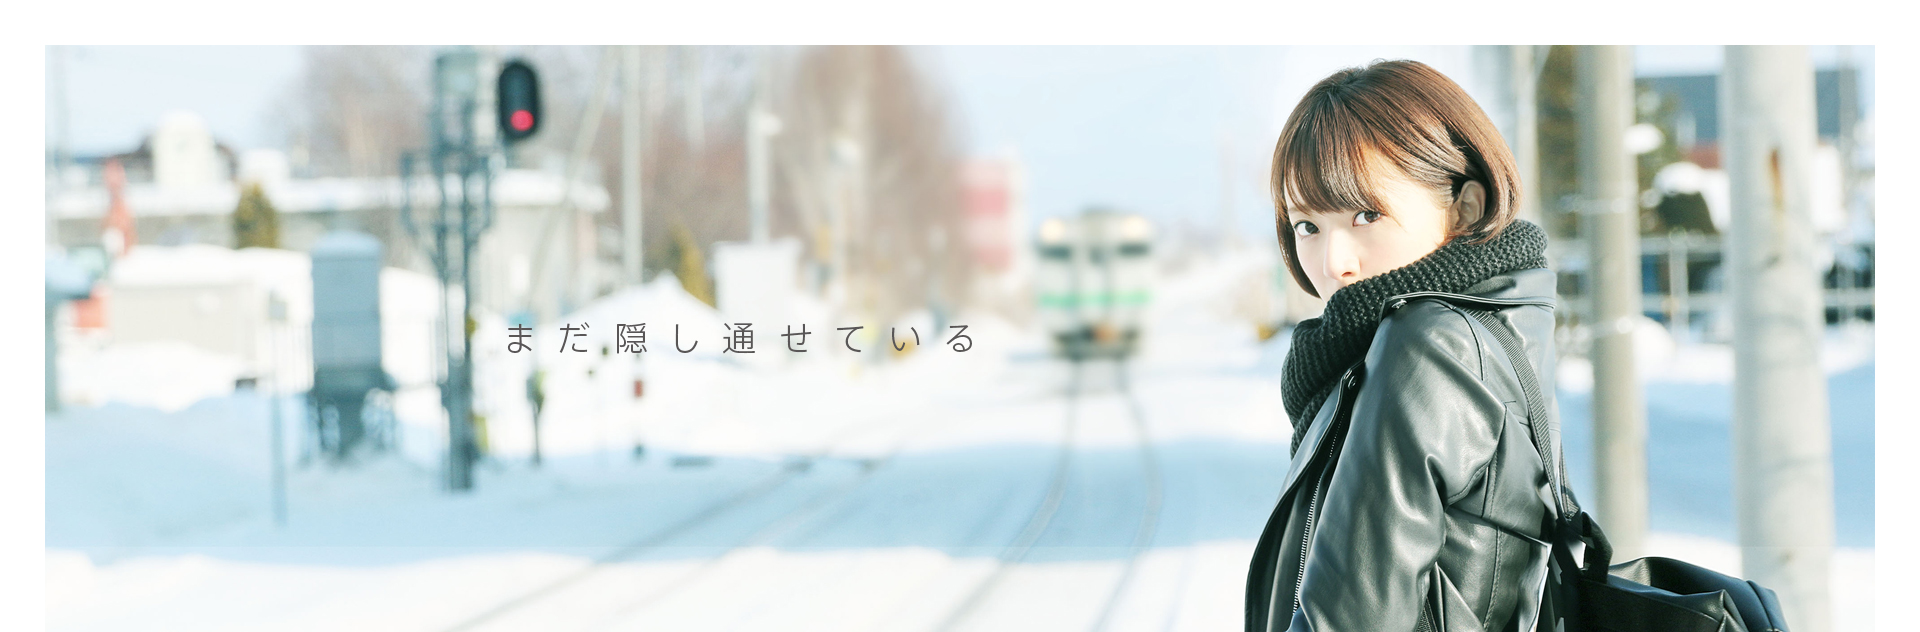 乃木坂46初のドキュメンタリー映画『悲しみの忘れ方 Documentary of 乃木坂46』公式サイト